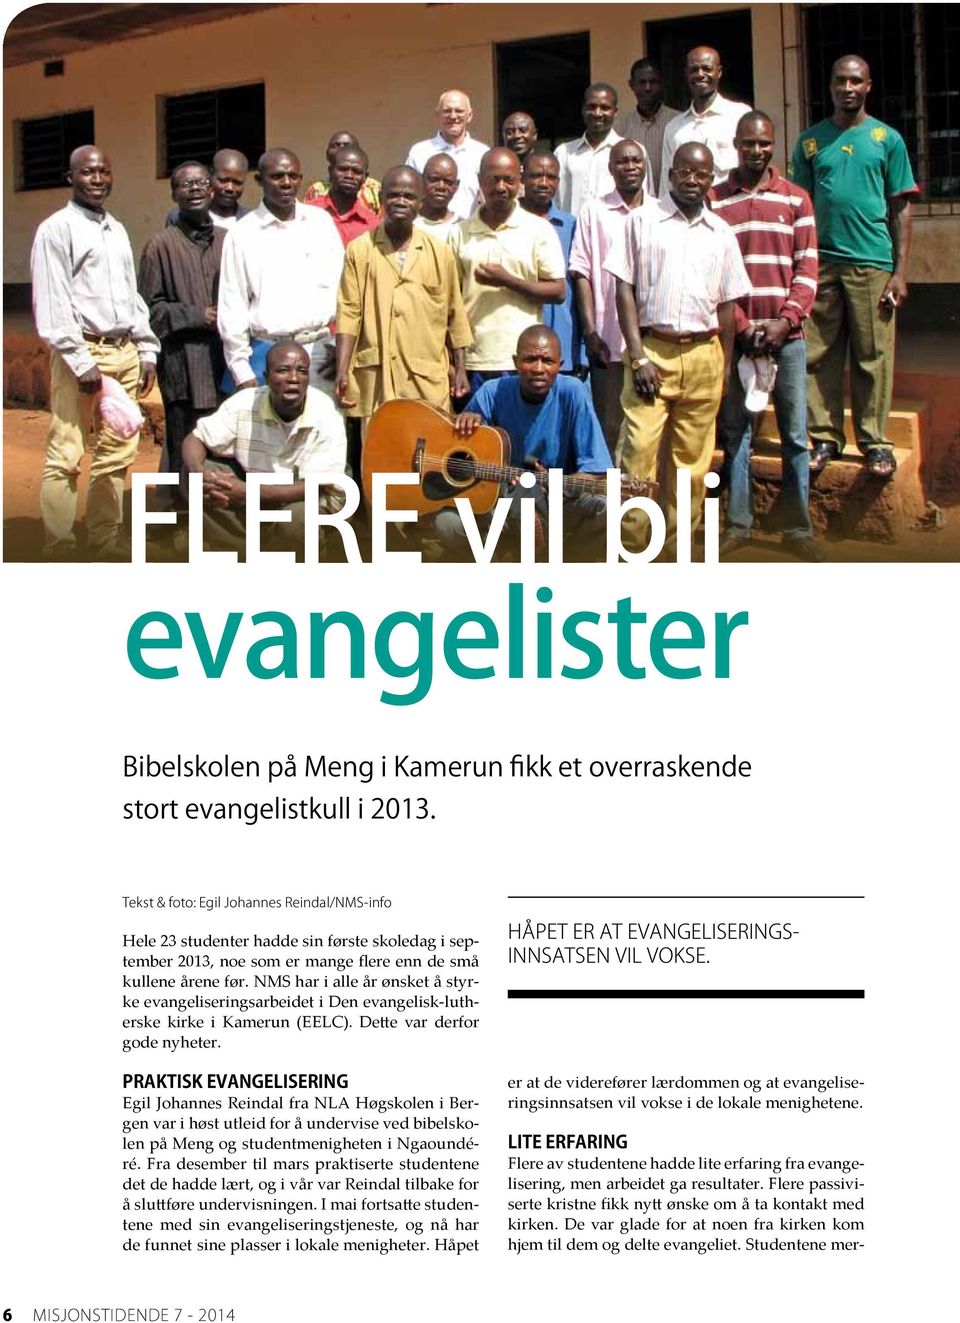 NMS har i alle år ønsket å styrke evangeliseringsarbeidet i Den evangelisk-lutherske kirke i Kamerun (EELC). Dette var derfor gode nyheter.